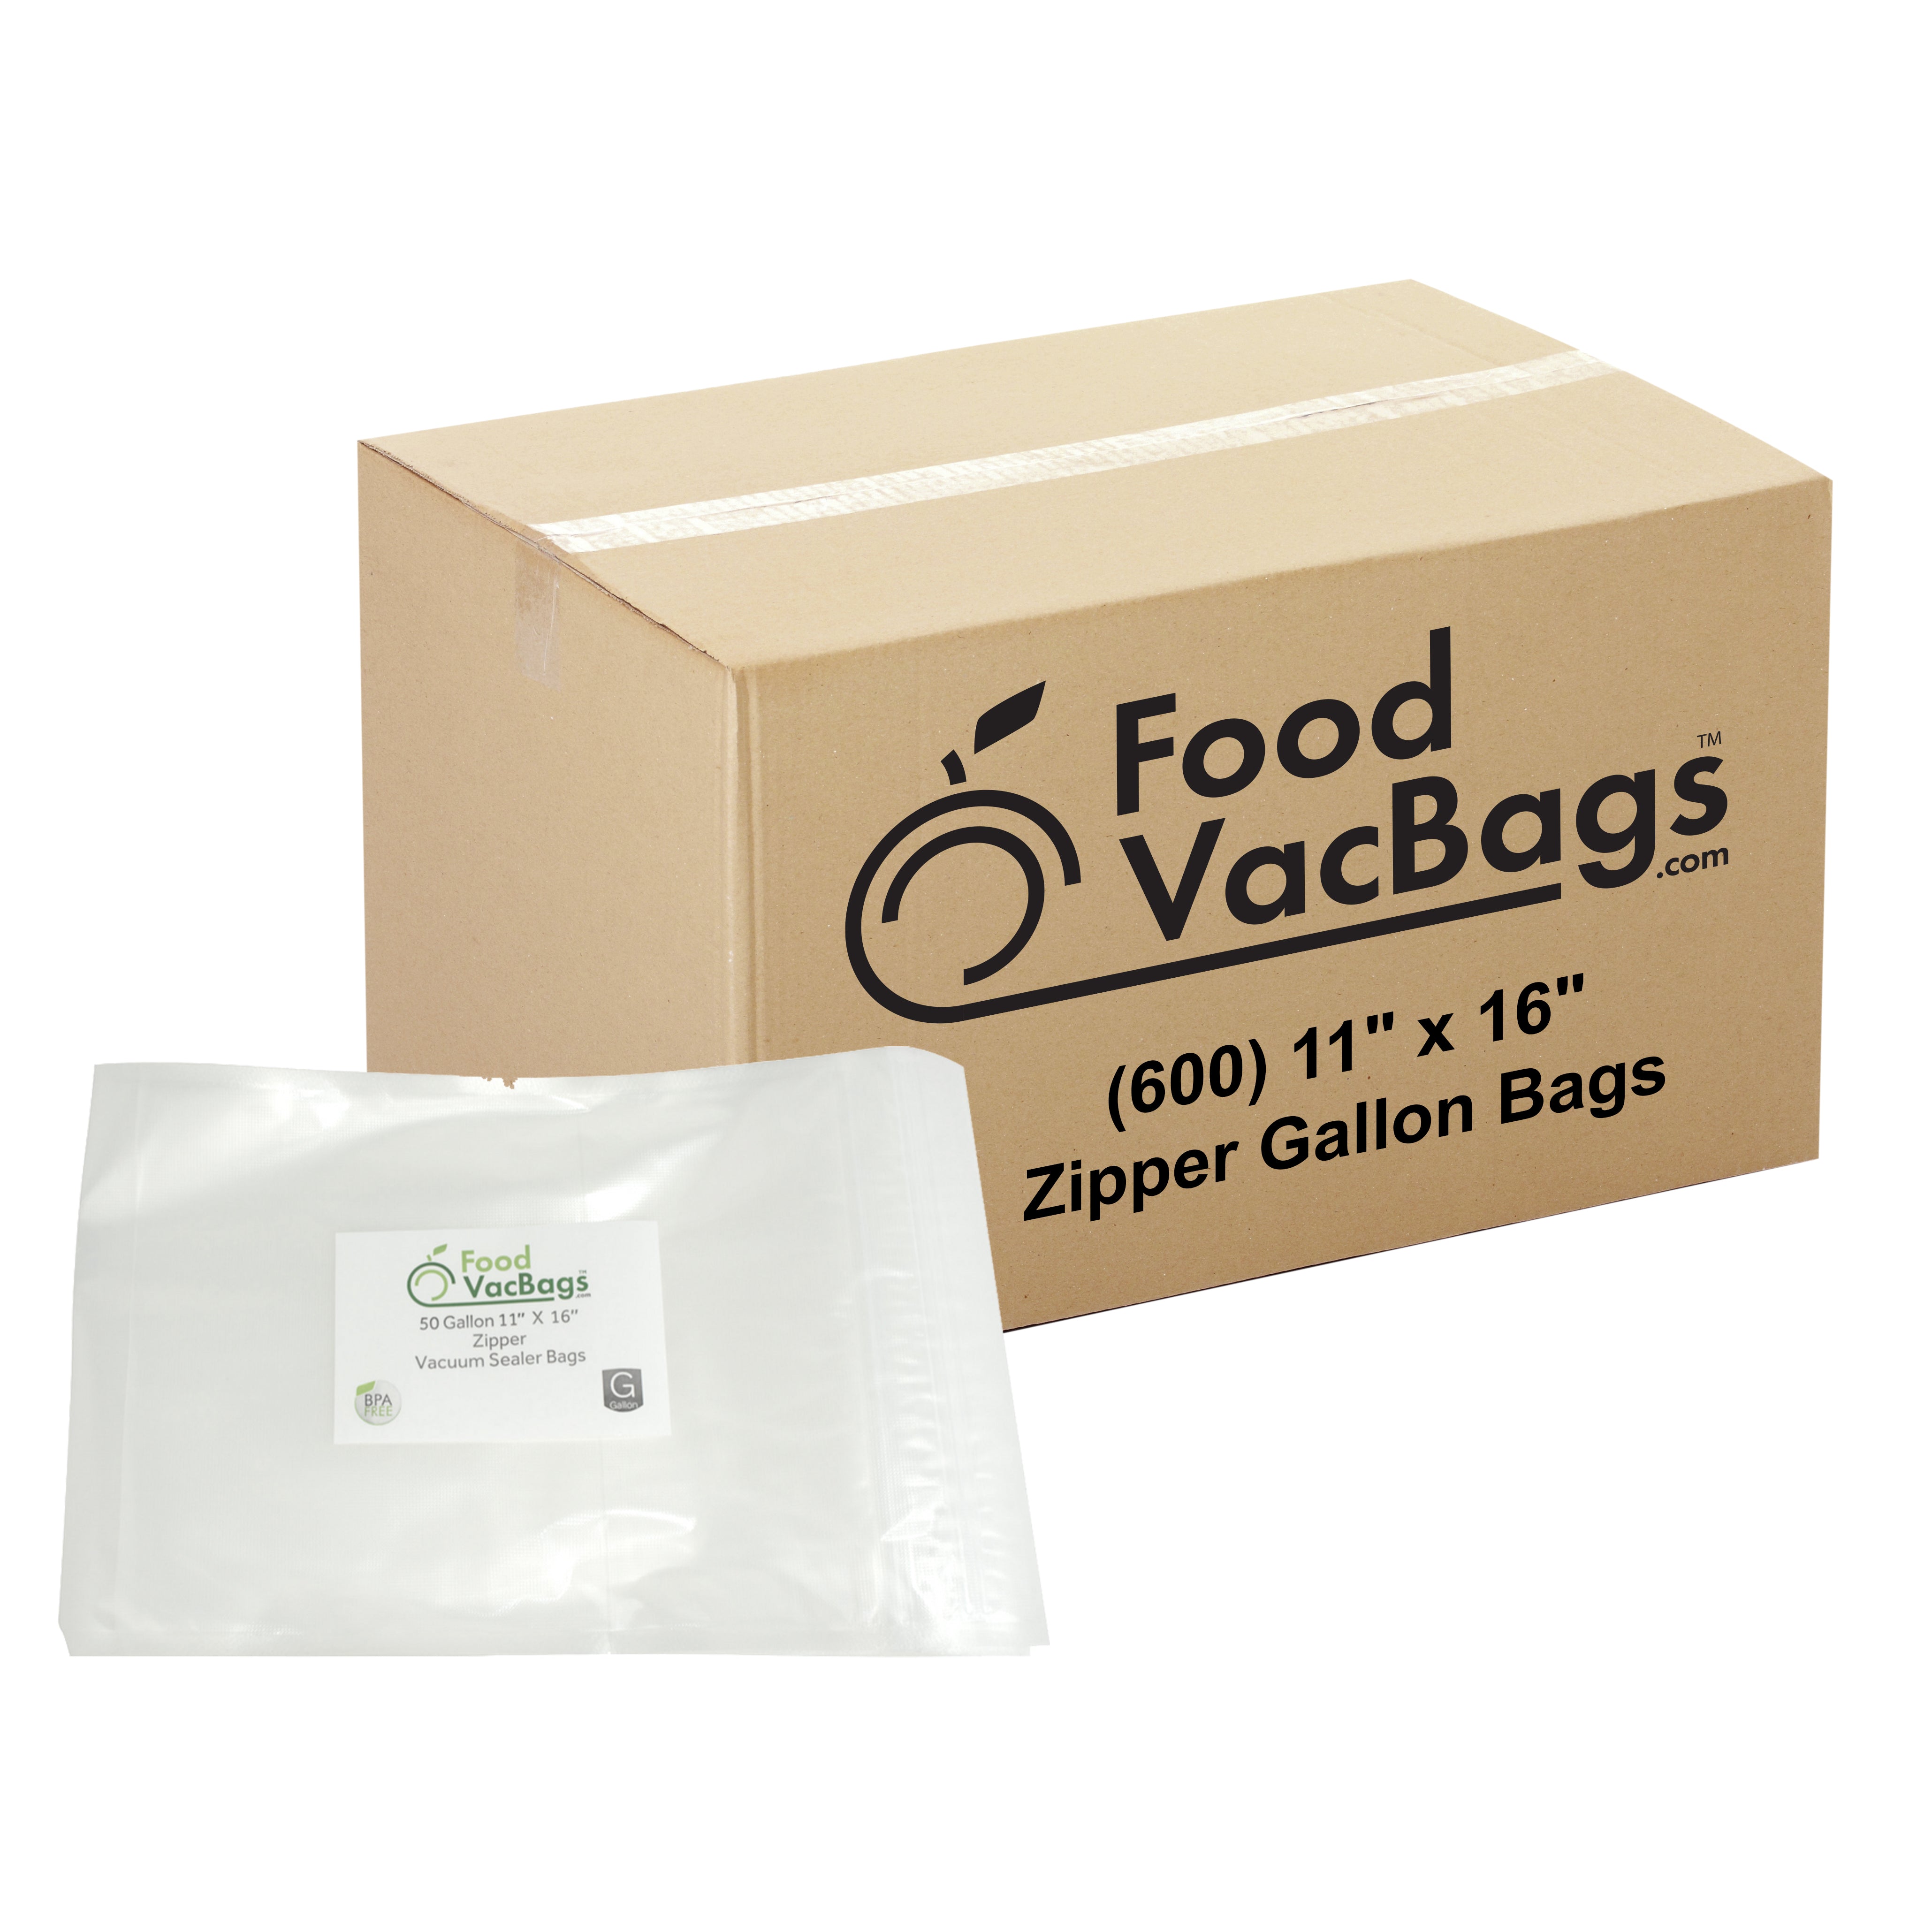 https://foodvacbags.com/cdn/shop/products/11x16-Zipper-600.jpg?v=1599853051